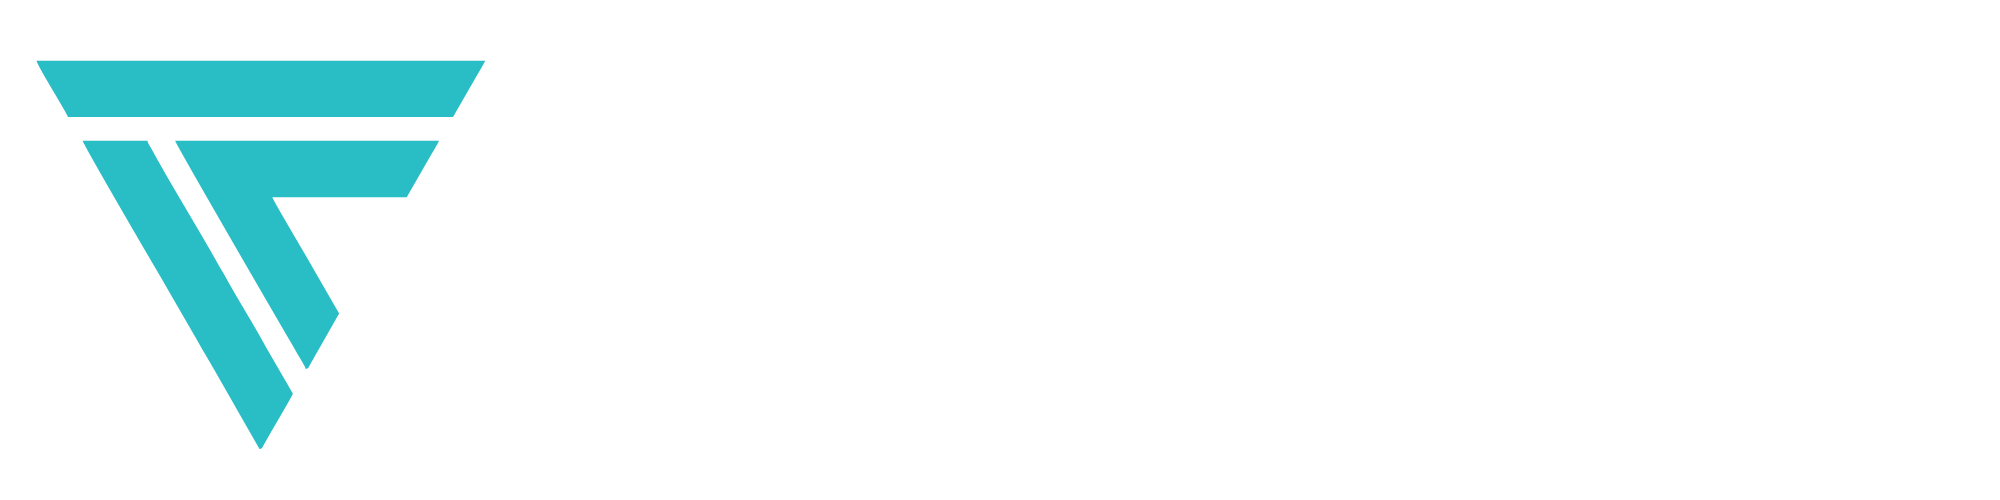 vf ambassador logo v2 light